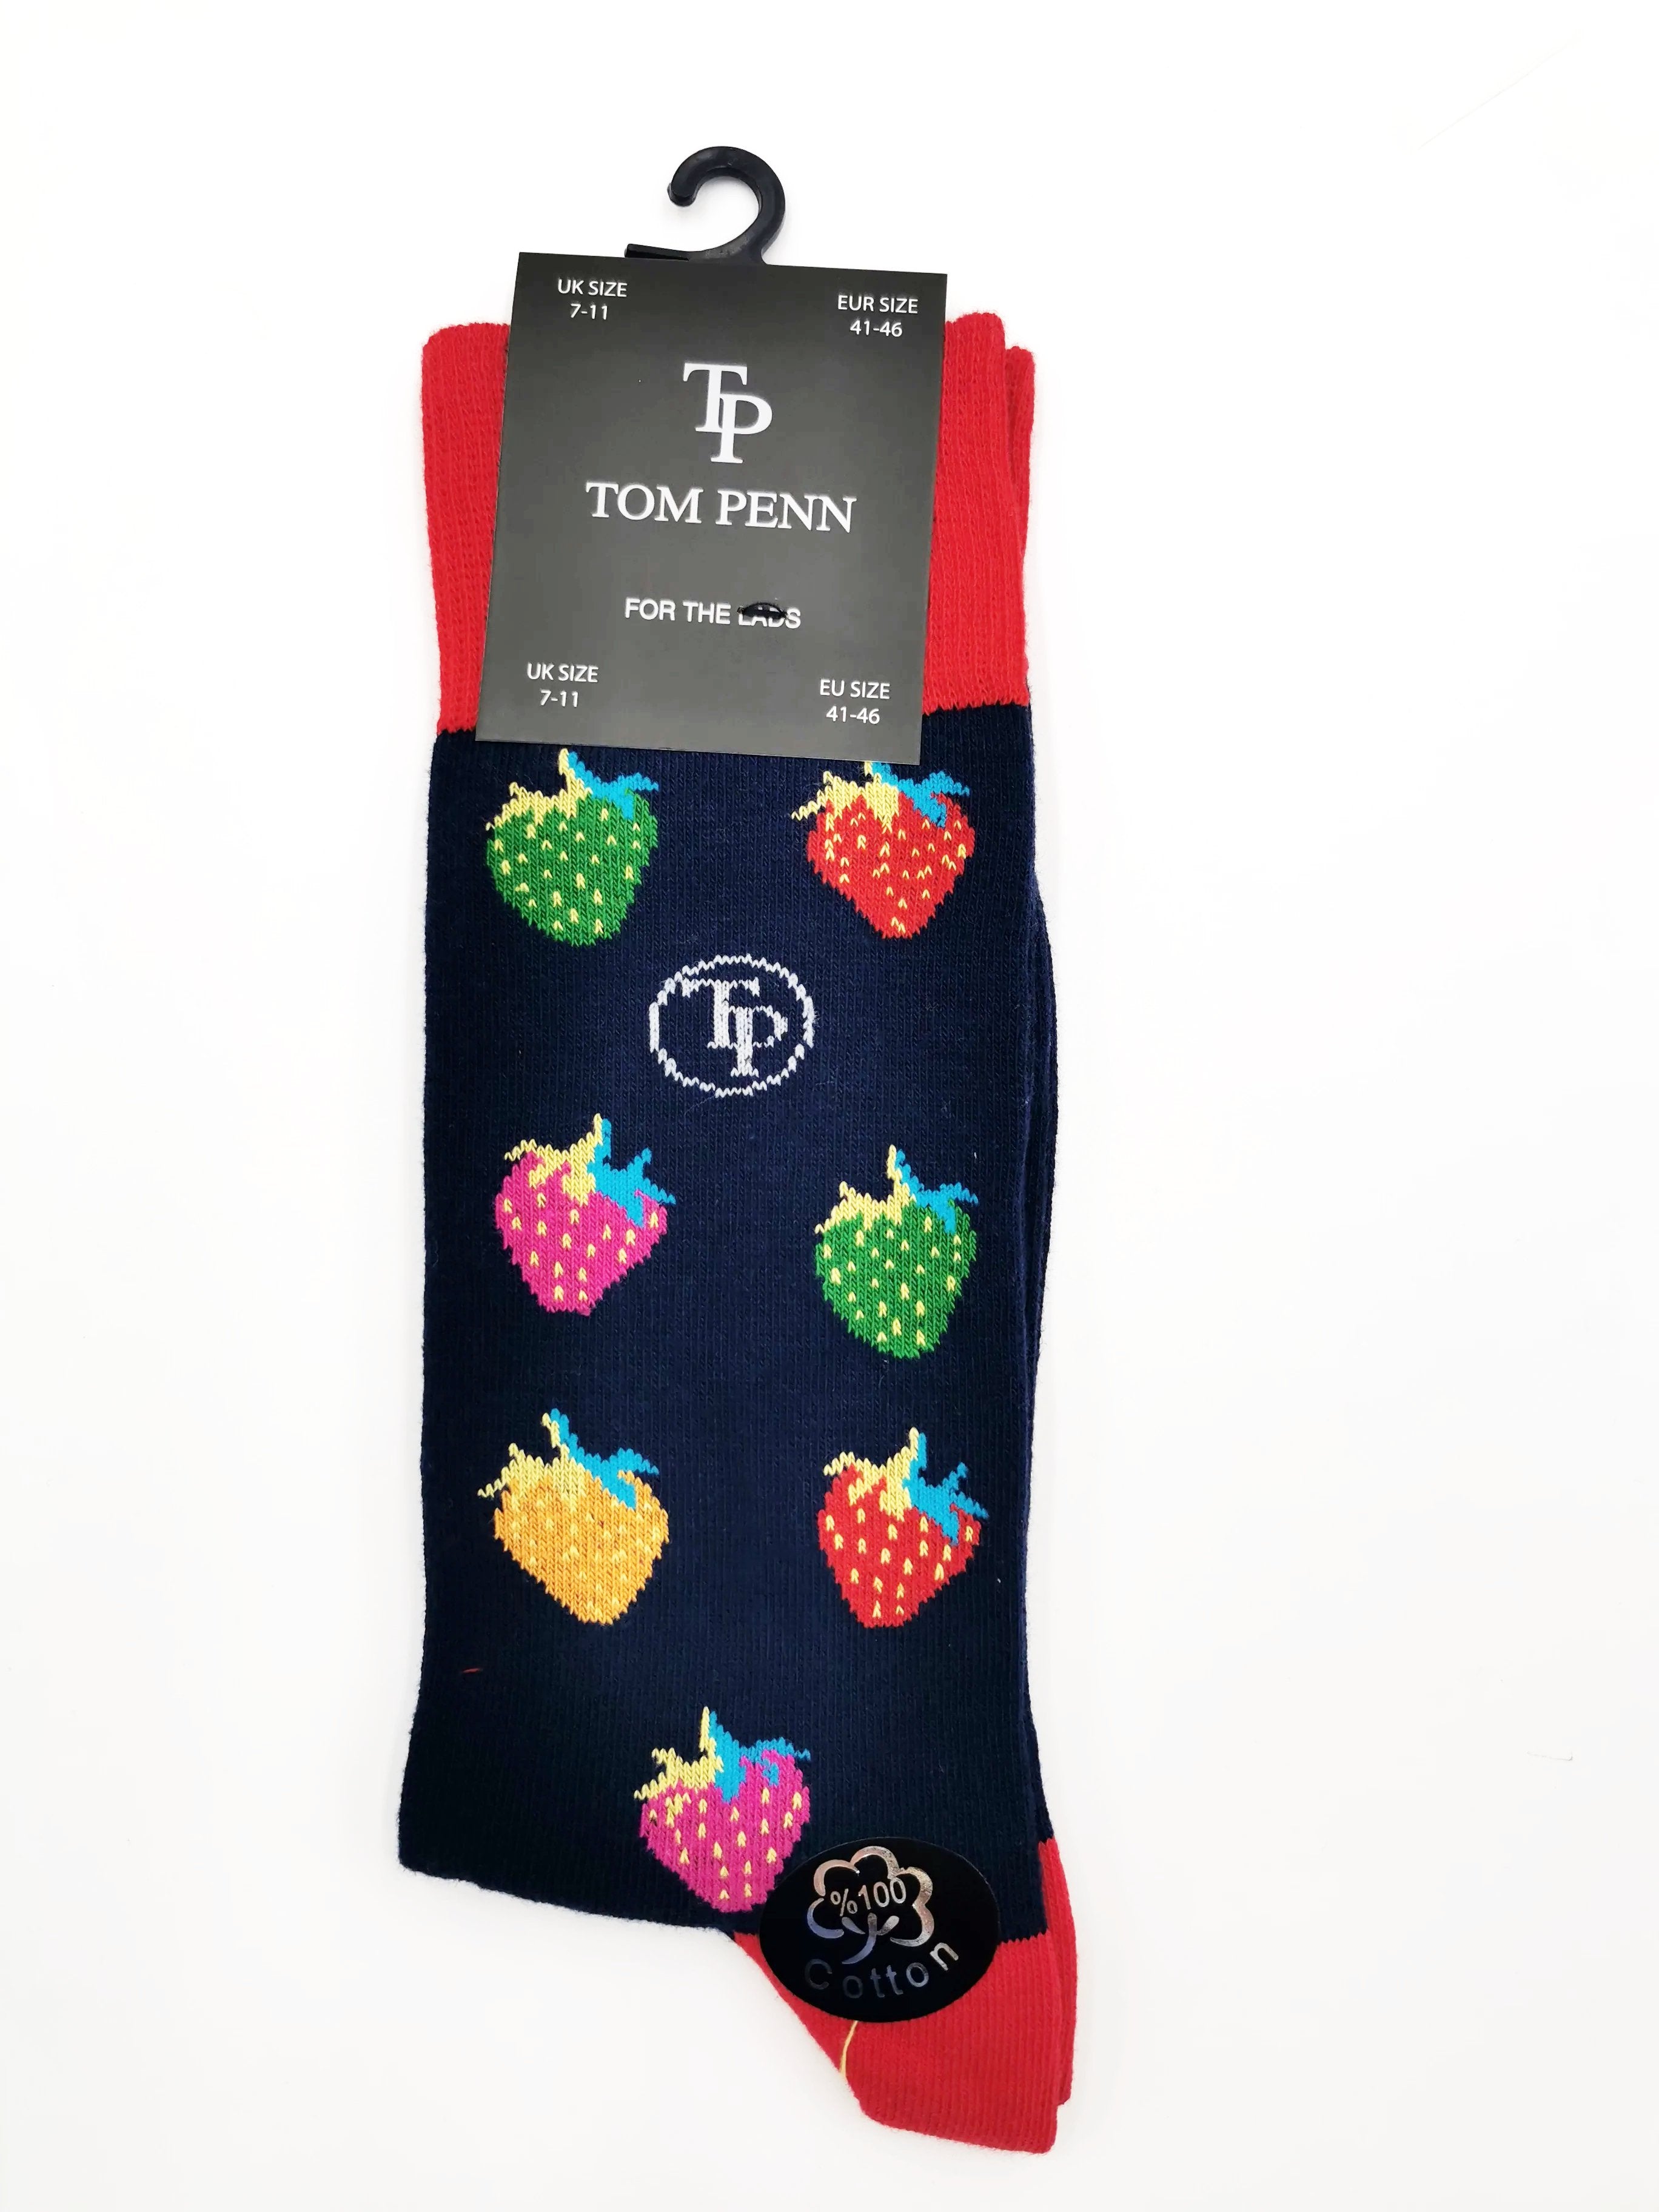 Tom Penn Navy Strawberry Design sock